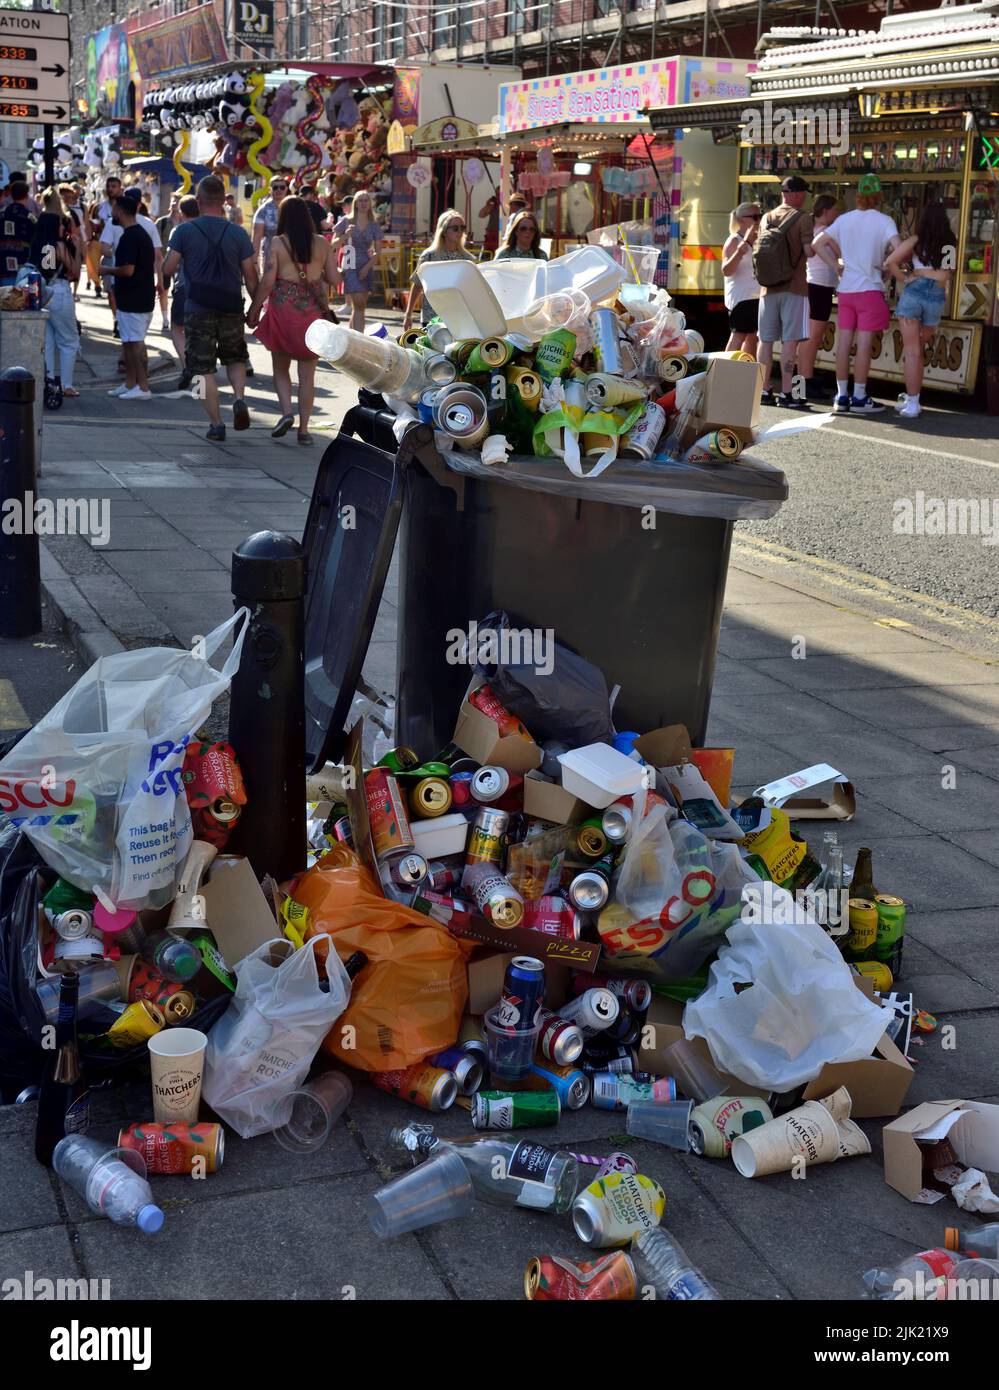 Contenedor de basura rebosante a lo largo de la calle en el festival del puerto de Bristol Foto de stock